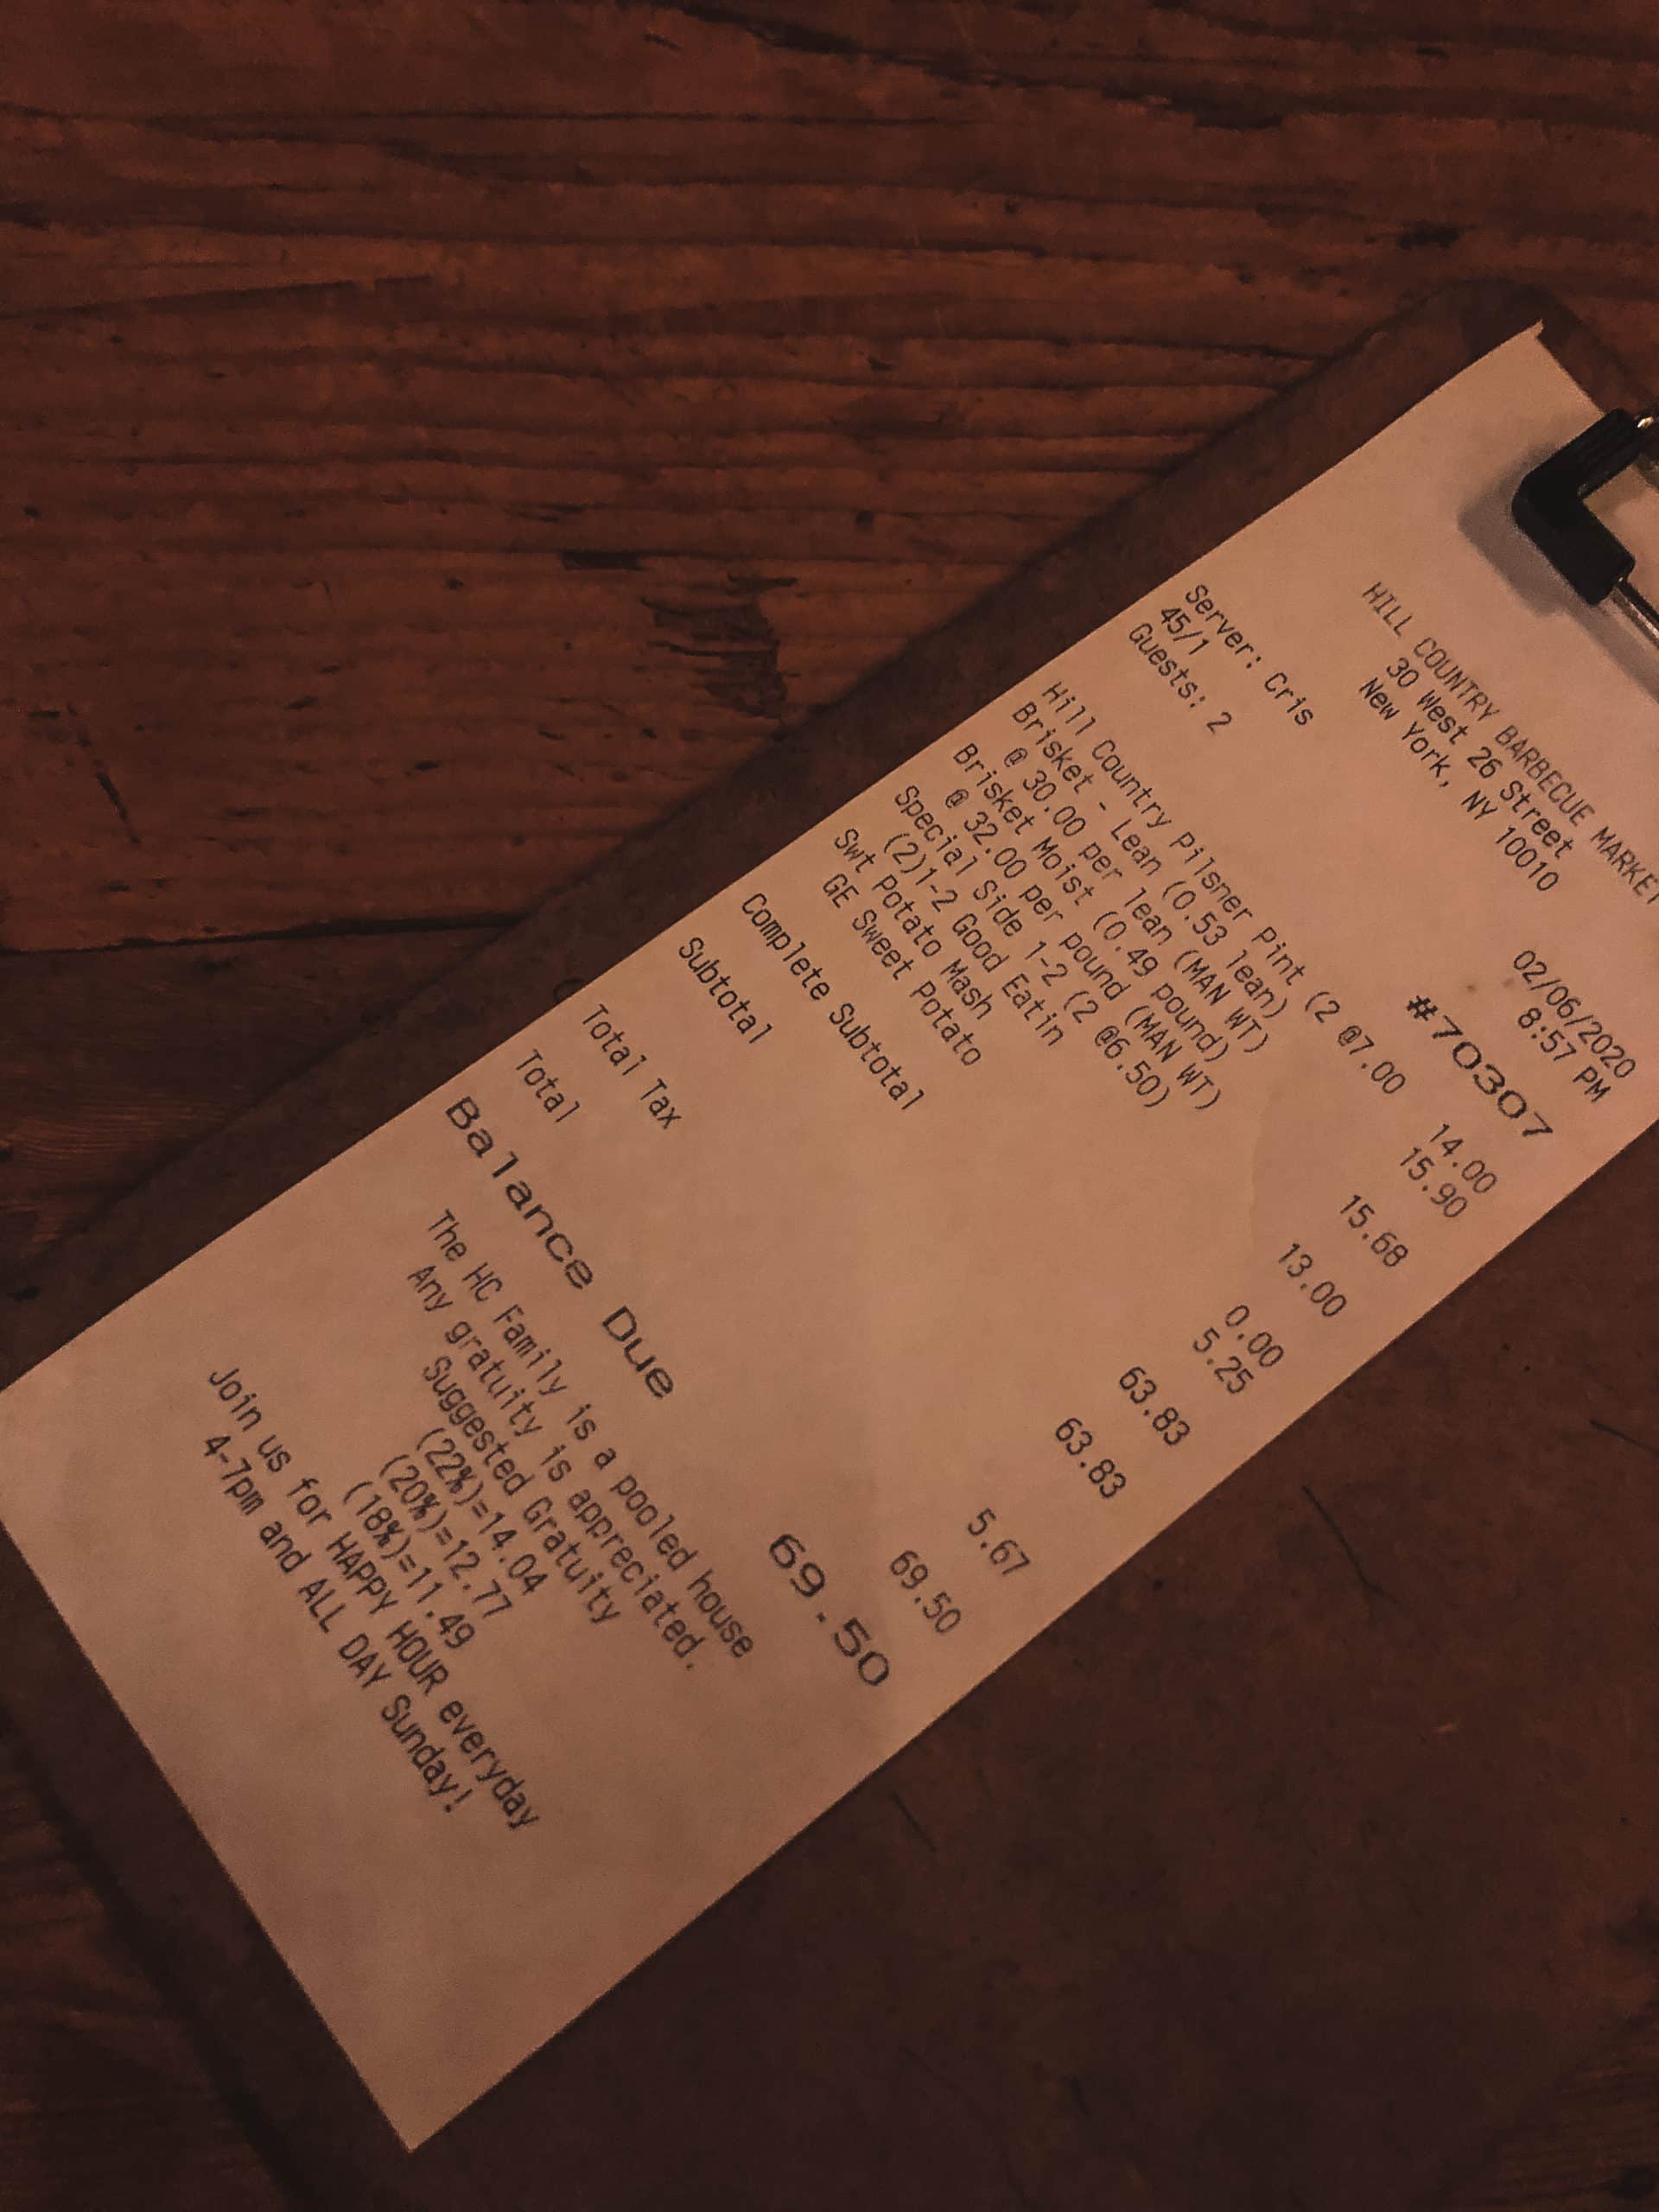 цены в ресторанах НЬю-Йорк, средний чек